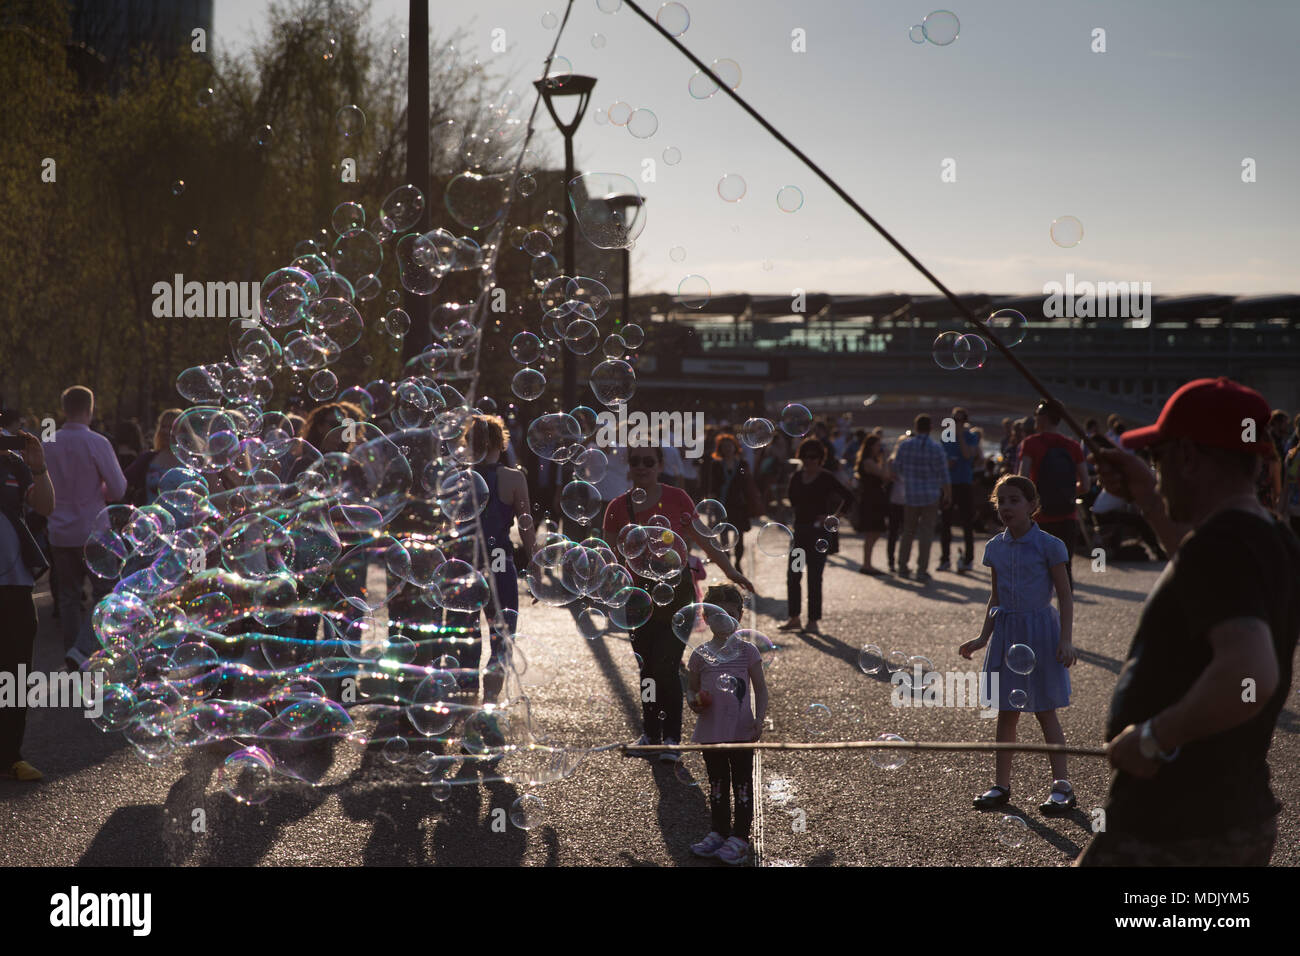 Londres, Royaume-Uni. 19 avril, 2018. Météo France : un musicien ambulant fait de bulles de passants sur la rive sud de la Tamise pendant un beau soir, à London, UK Crédit : Carol Moir Banque D'Images